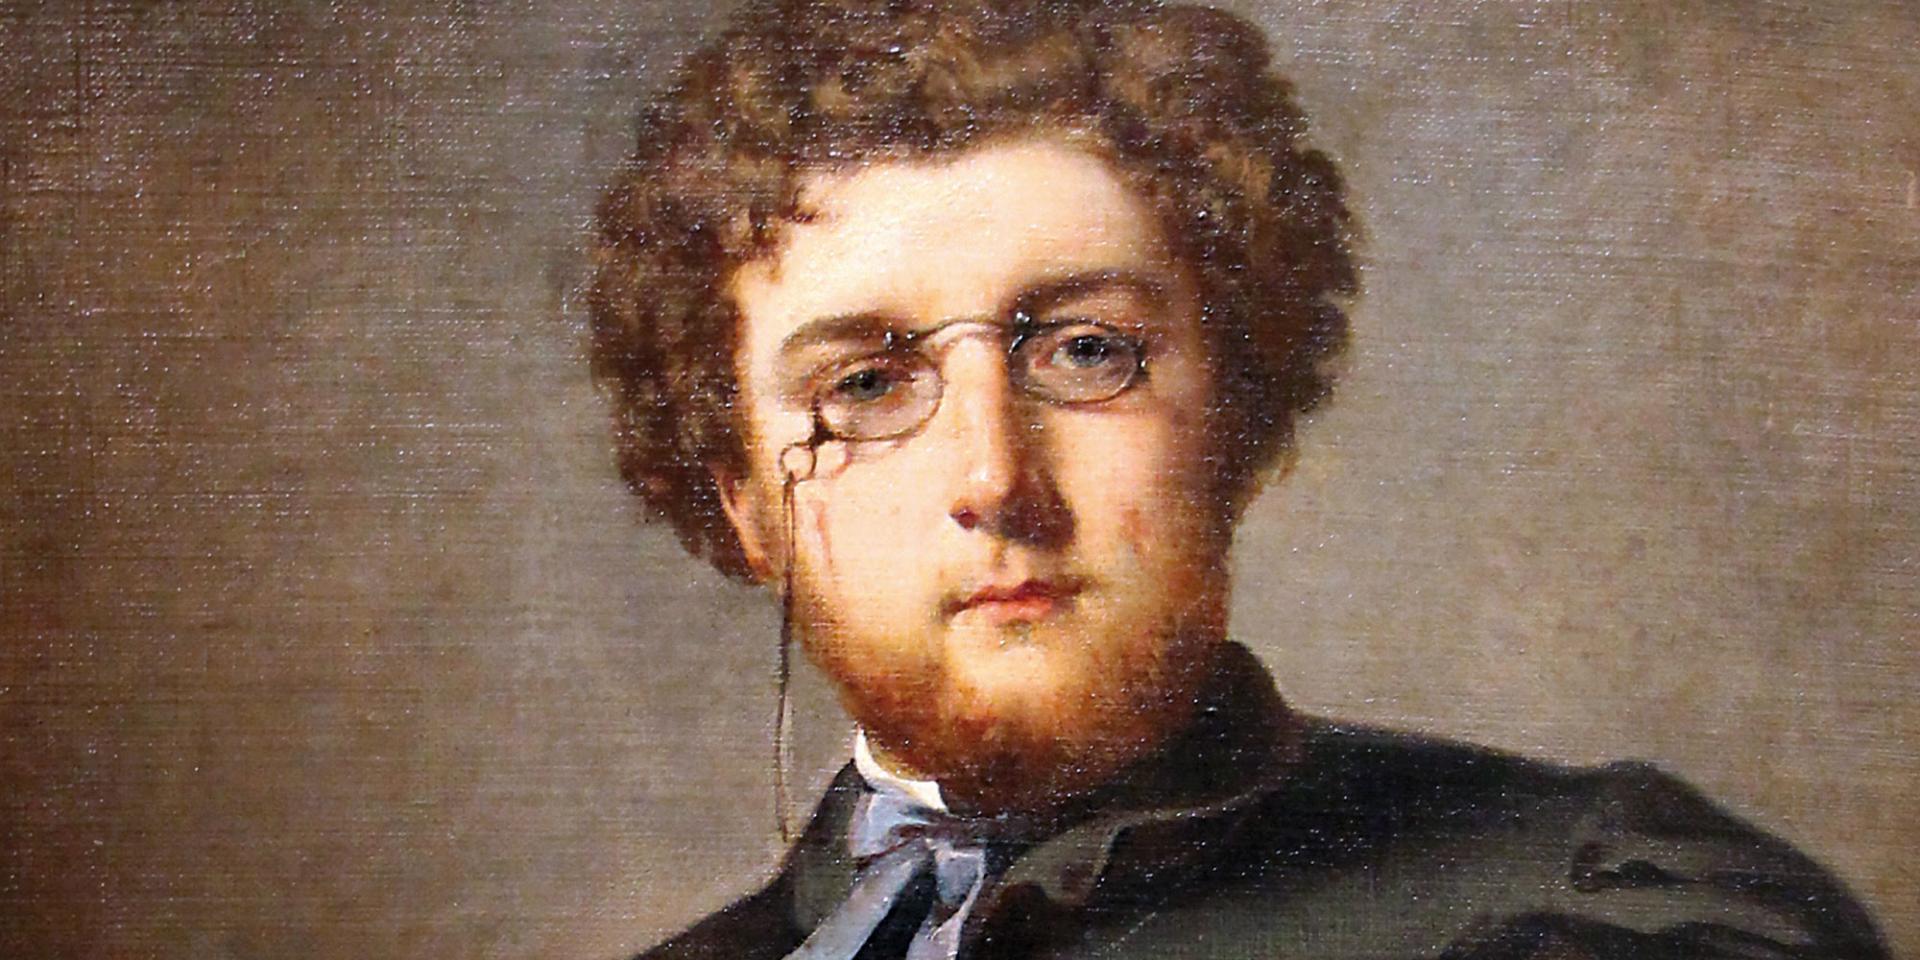 Félix Henri Giacomotti (1828-1909), Georges Bizet (1838-1875). Oil on canvas, 1860. Paris, Musée Carnavalet.